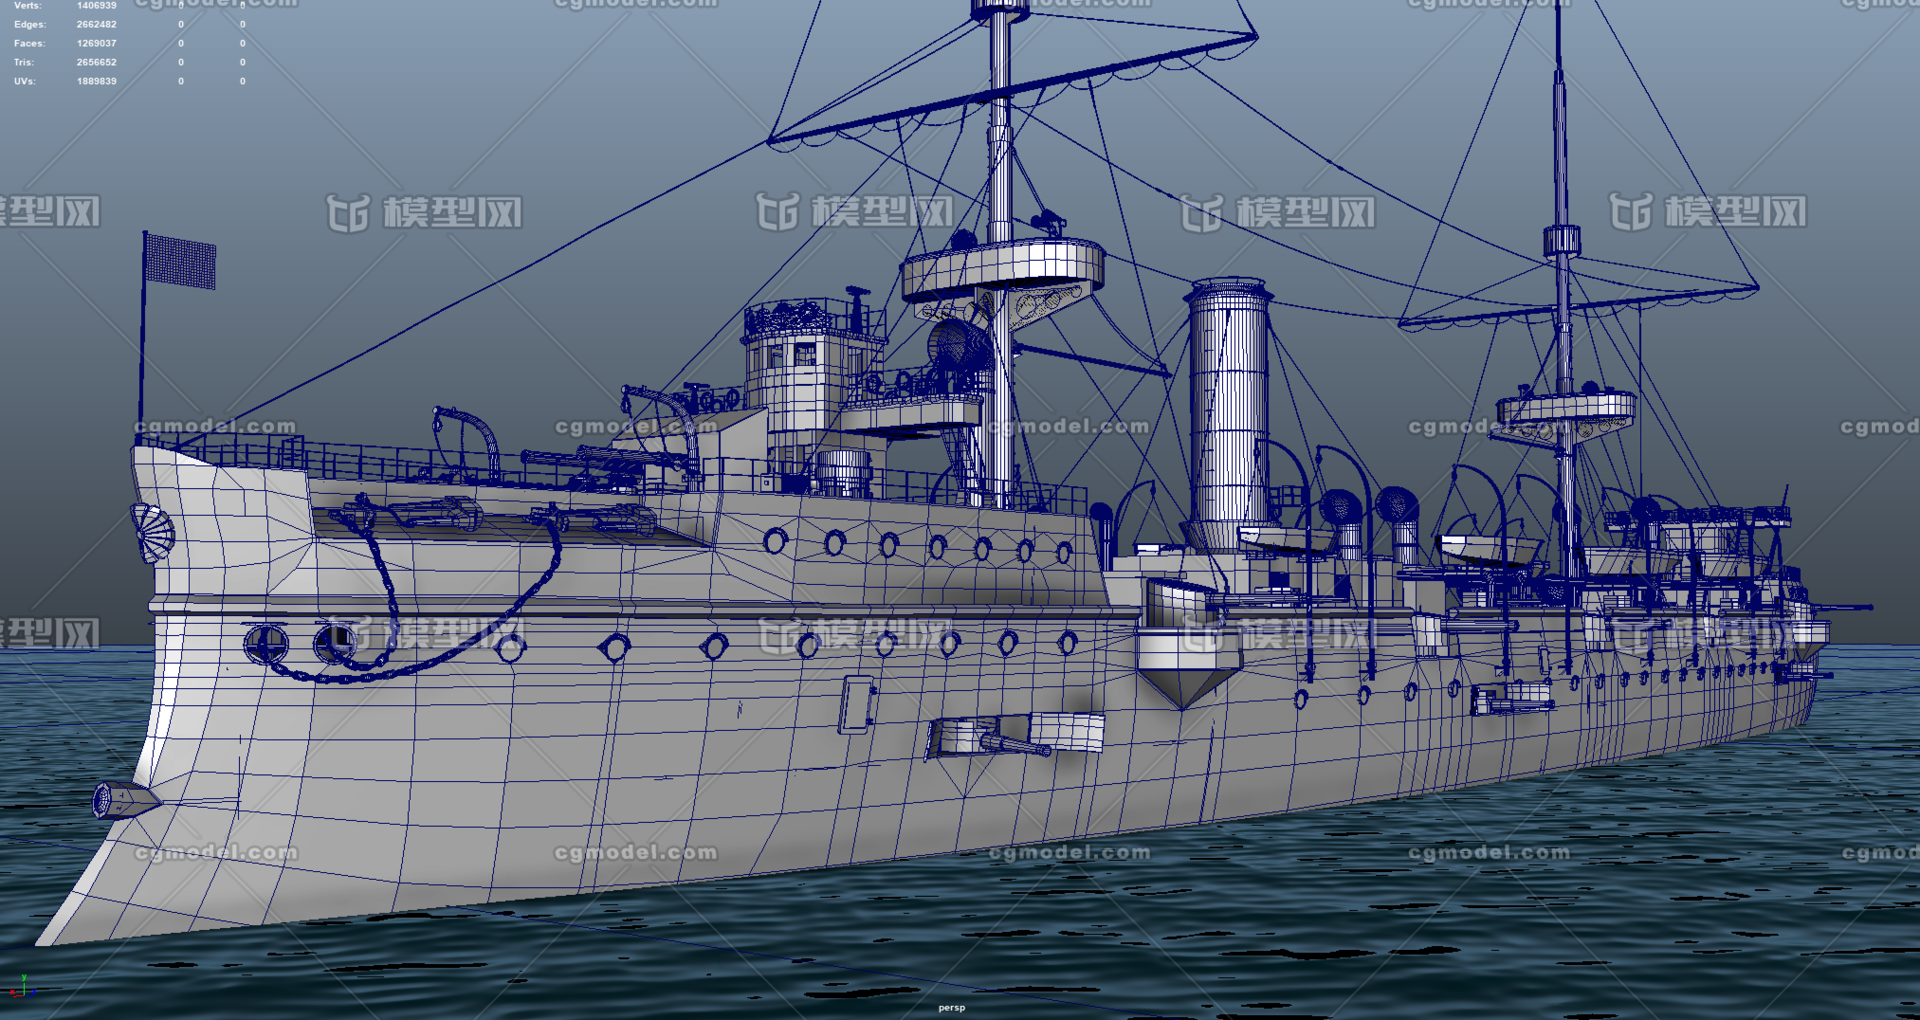 致远舰 带内部结构 甲午海战 战舰 新式穹甲巡洋舰 致远号巡洋舰